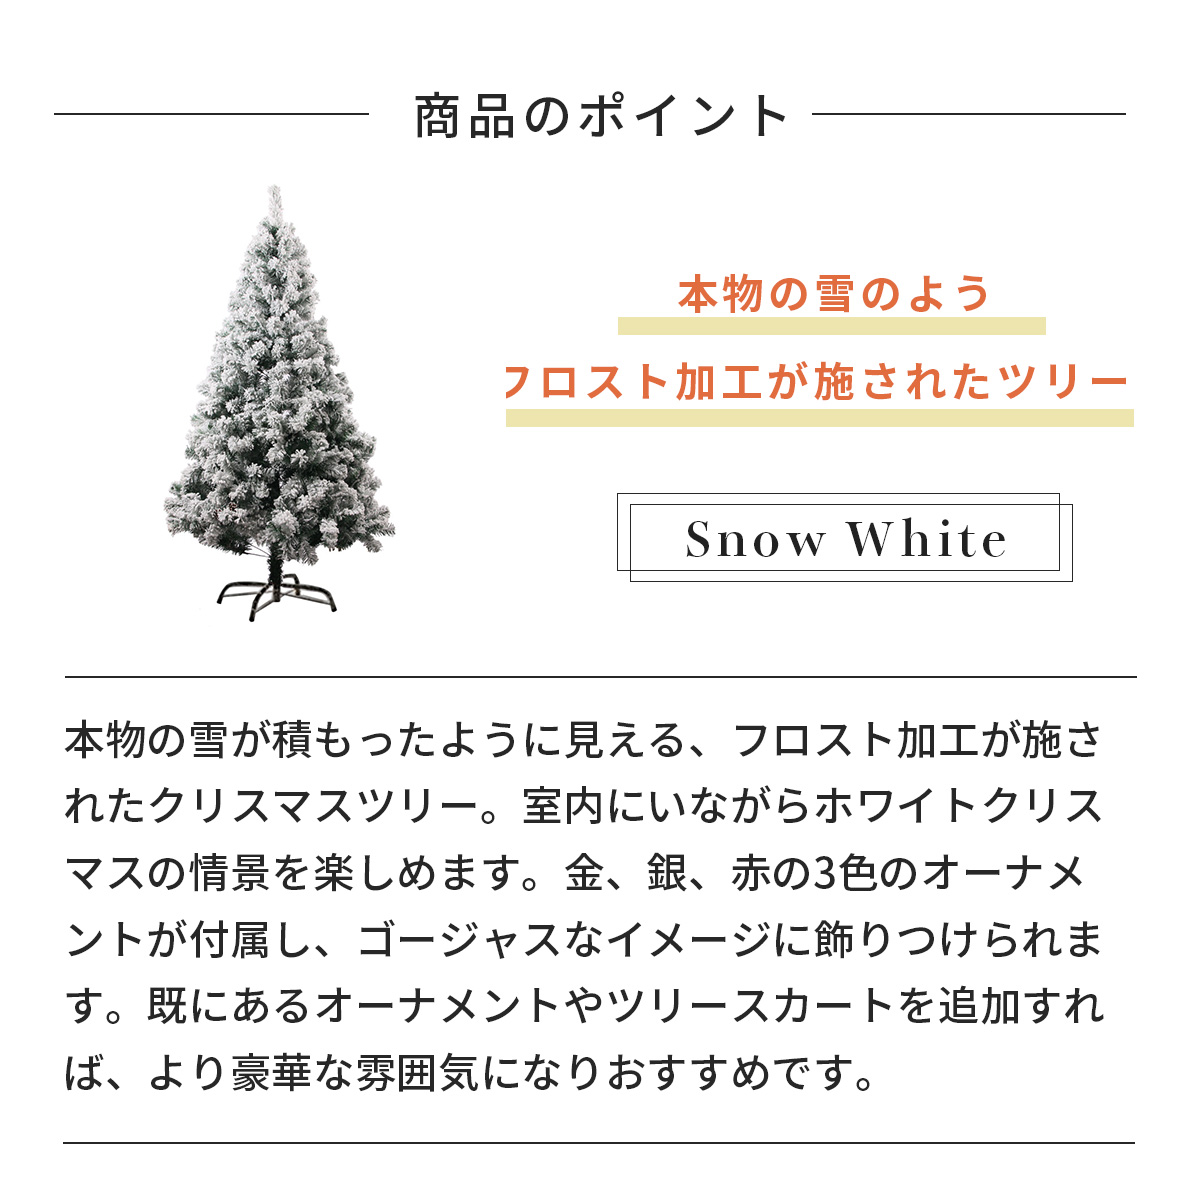 150cm] VeroMan クリスマスツリー スノーホワイト 雪化粧 フロスト加工